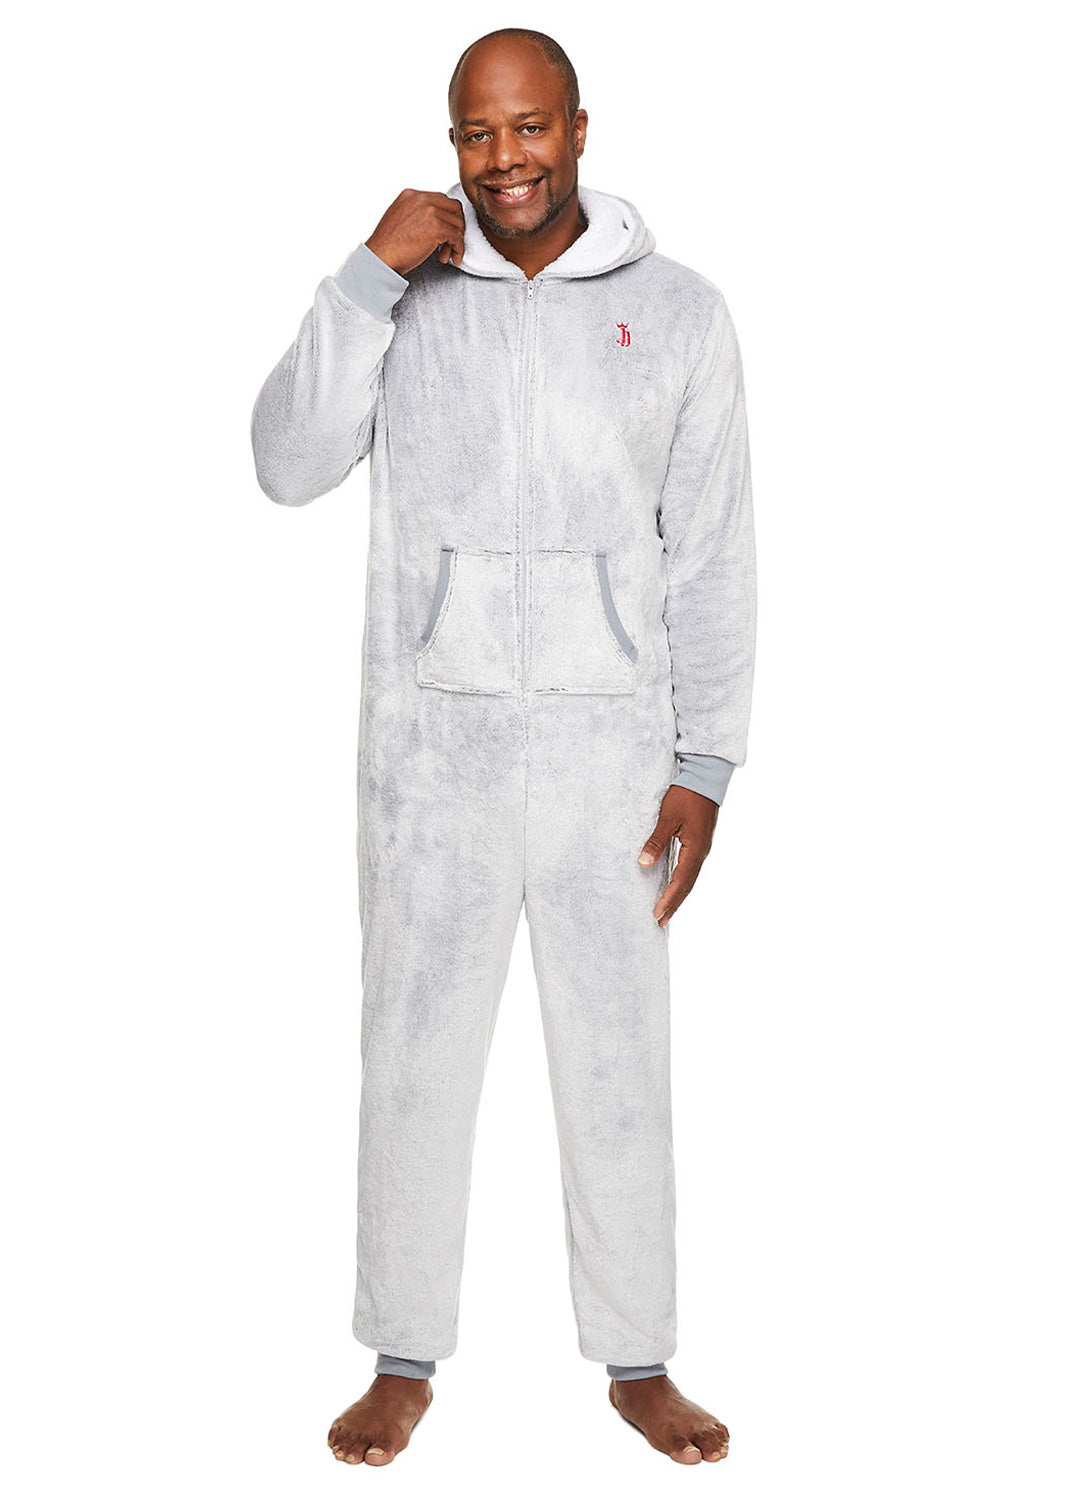 Man wearing Grey Reindeer Sleepwear Onesie